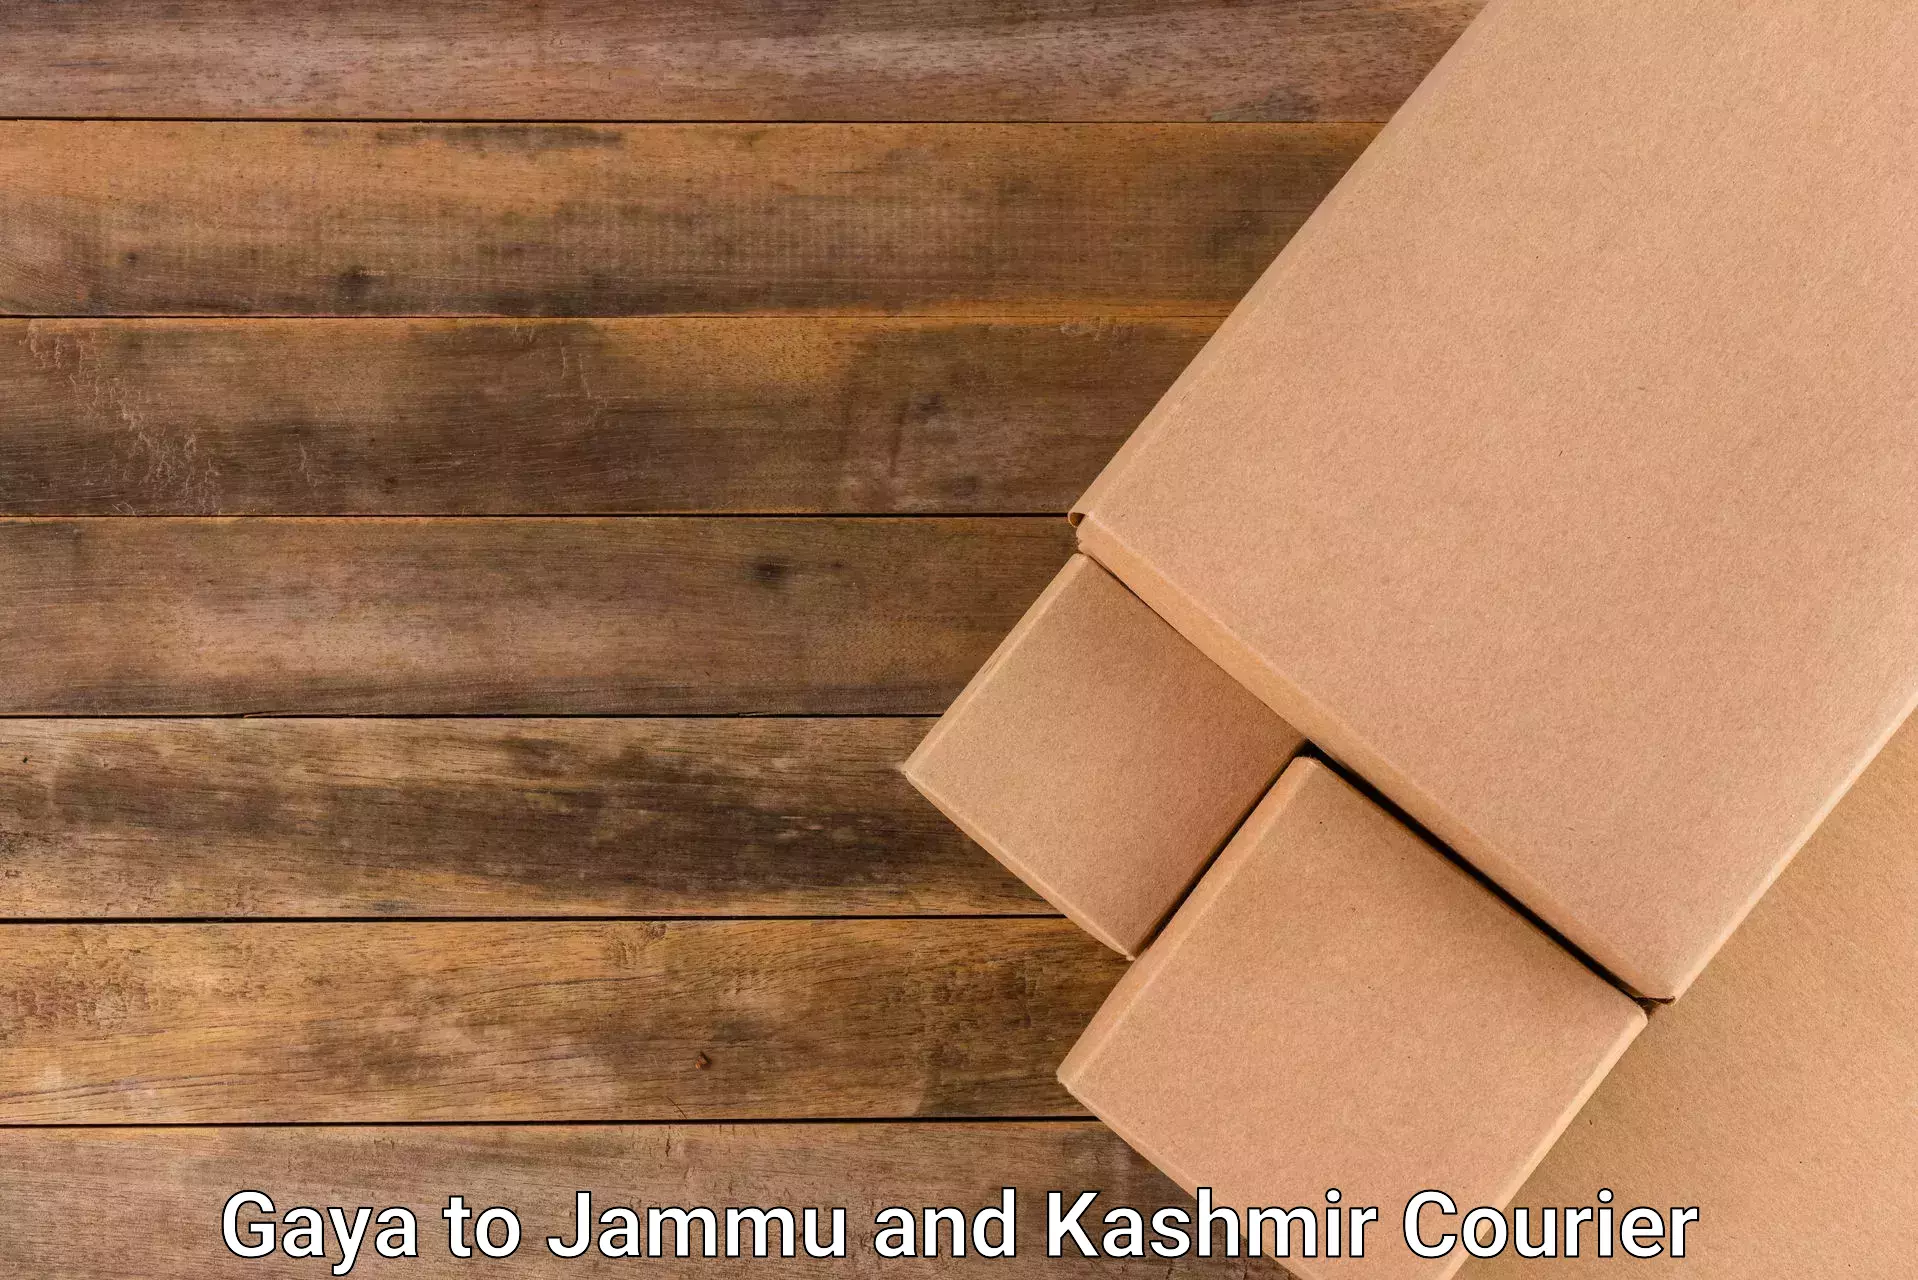 Online shipping calculator Gaya to Srinagar Kashmir